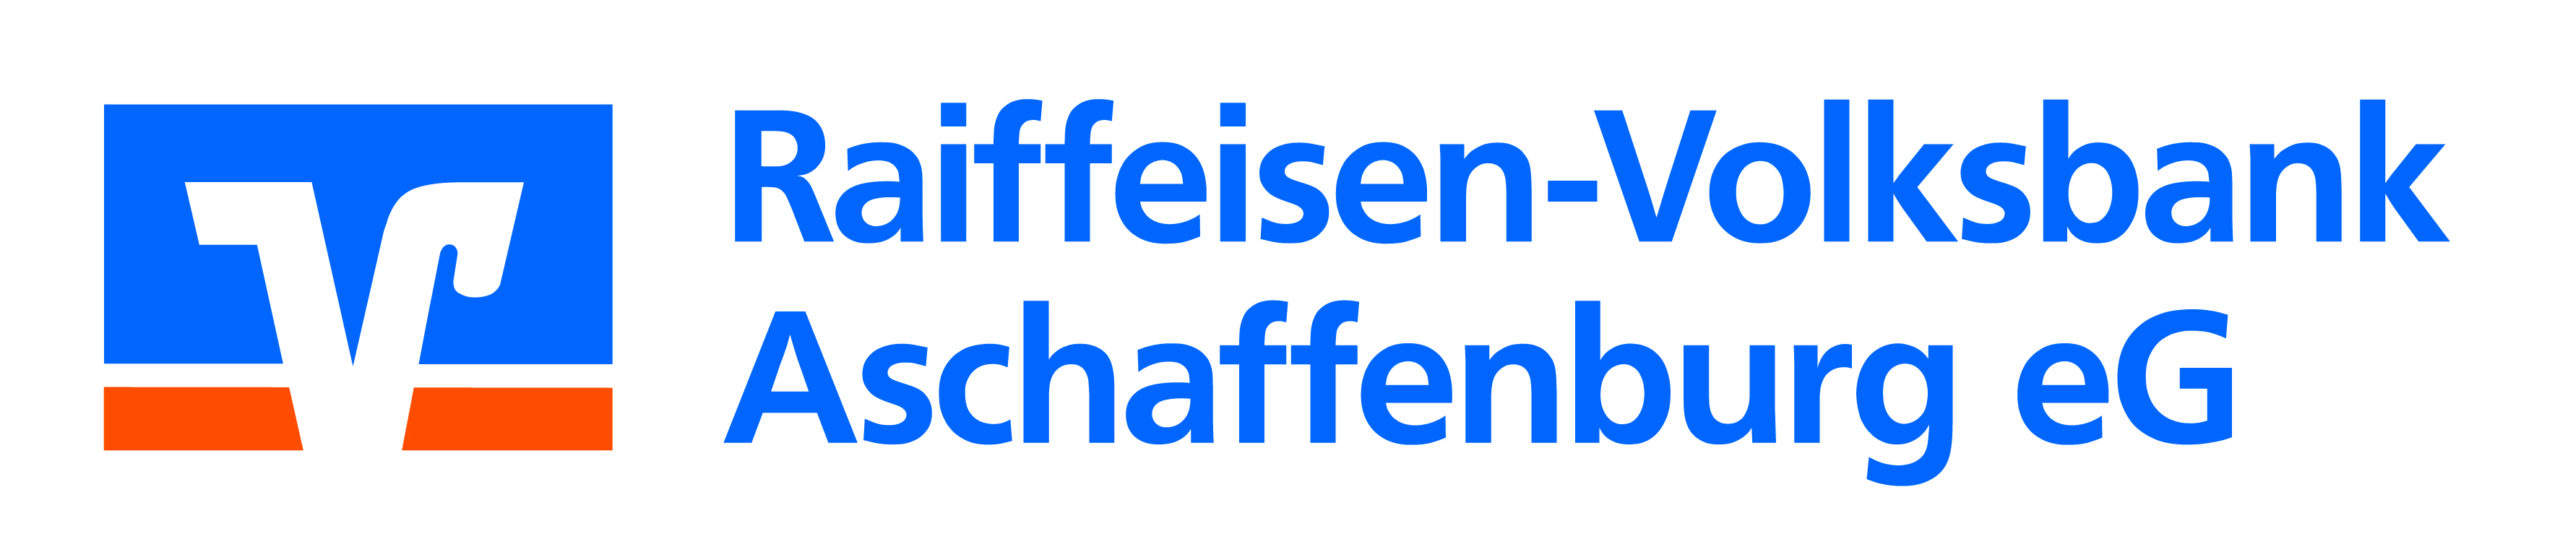 Raiffeisen-Volksbank Aschaffenburg